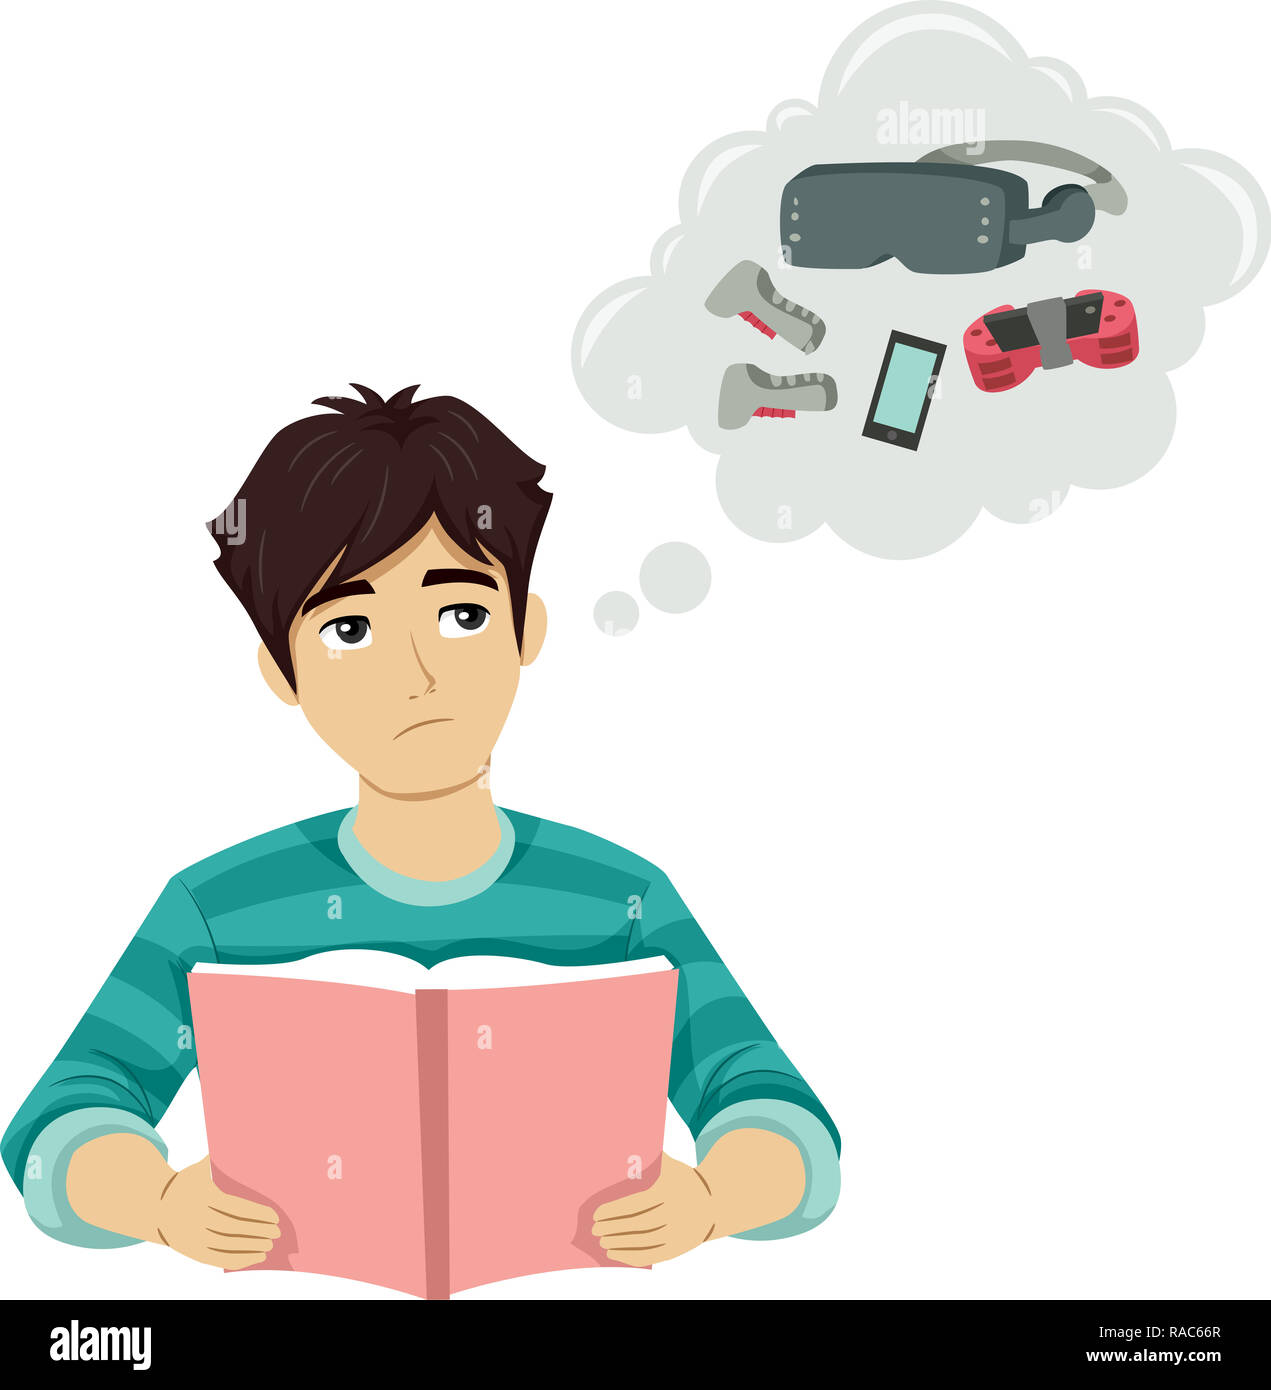 Ilustración de un chico adolescente leyendo un libro y el pensamiento de juegos que desea jugar Foto de stock